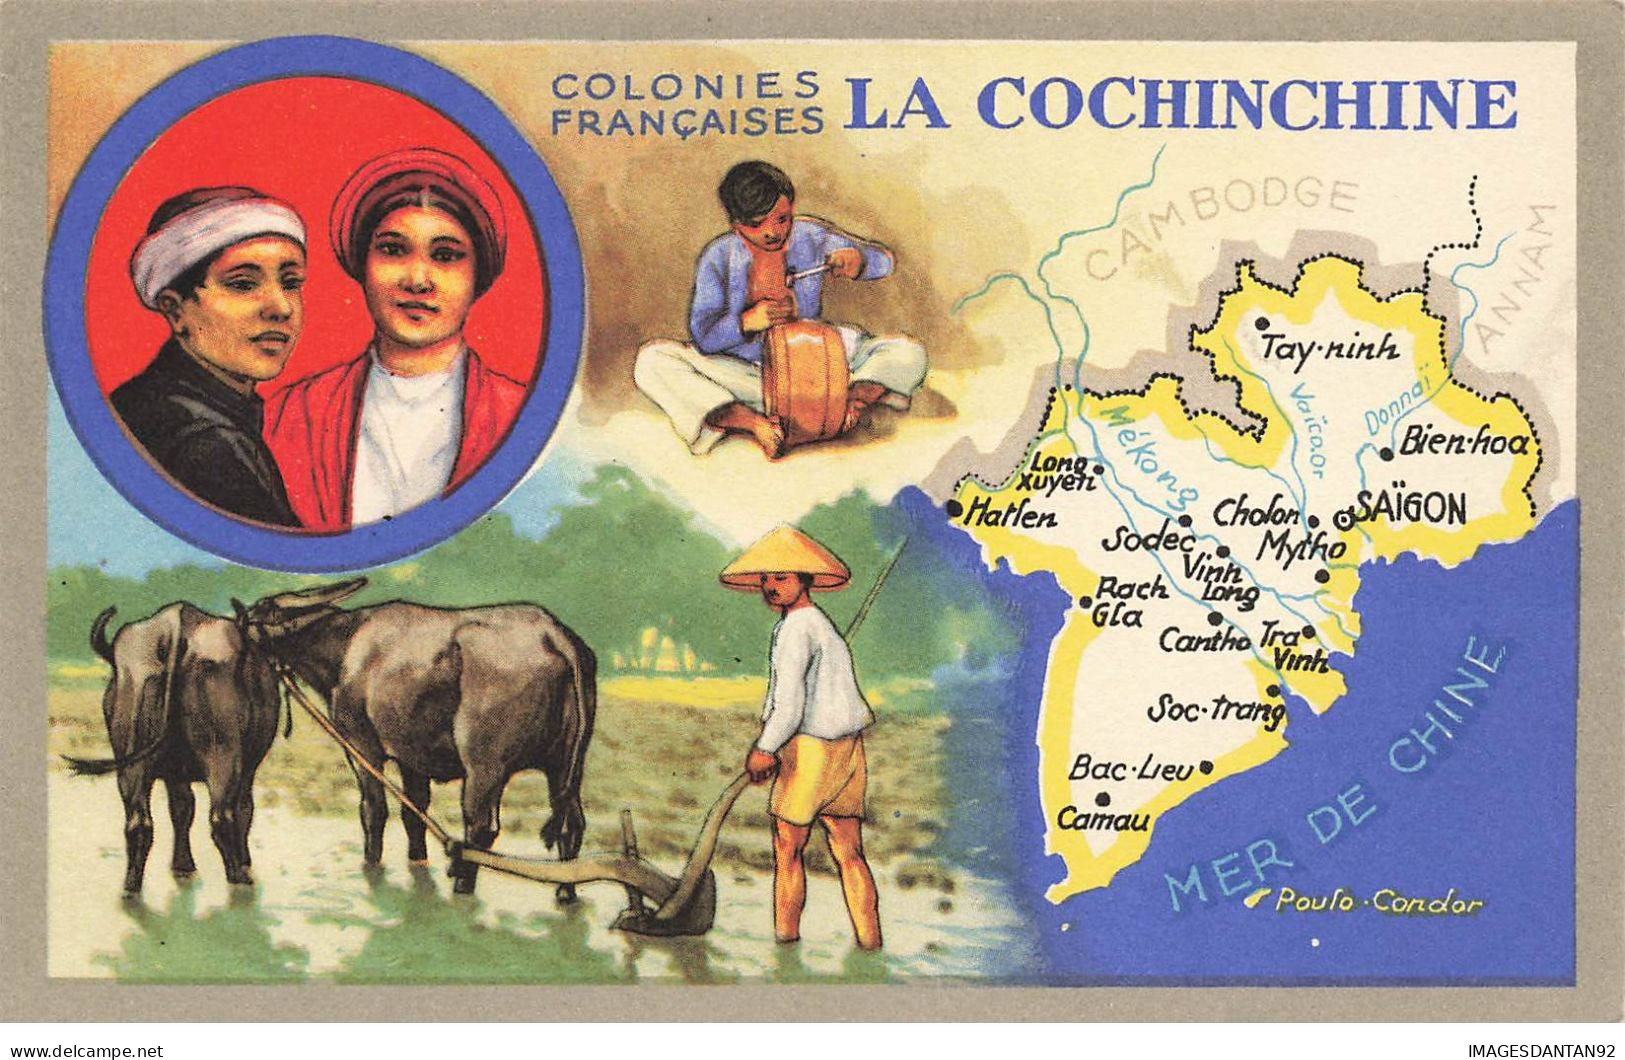 LA COCHINCHINE #MK39474 VIETNAM VIET NAM COLONIES FRANCAISES LA COCHINCHINE CARTE GEOGRAPHIQUE - Vietnam